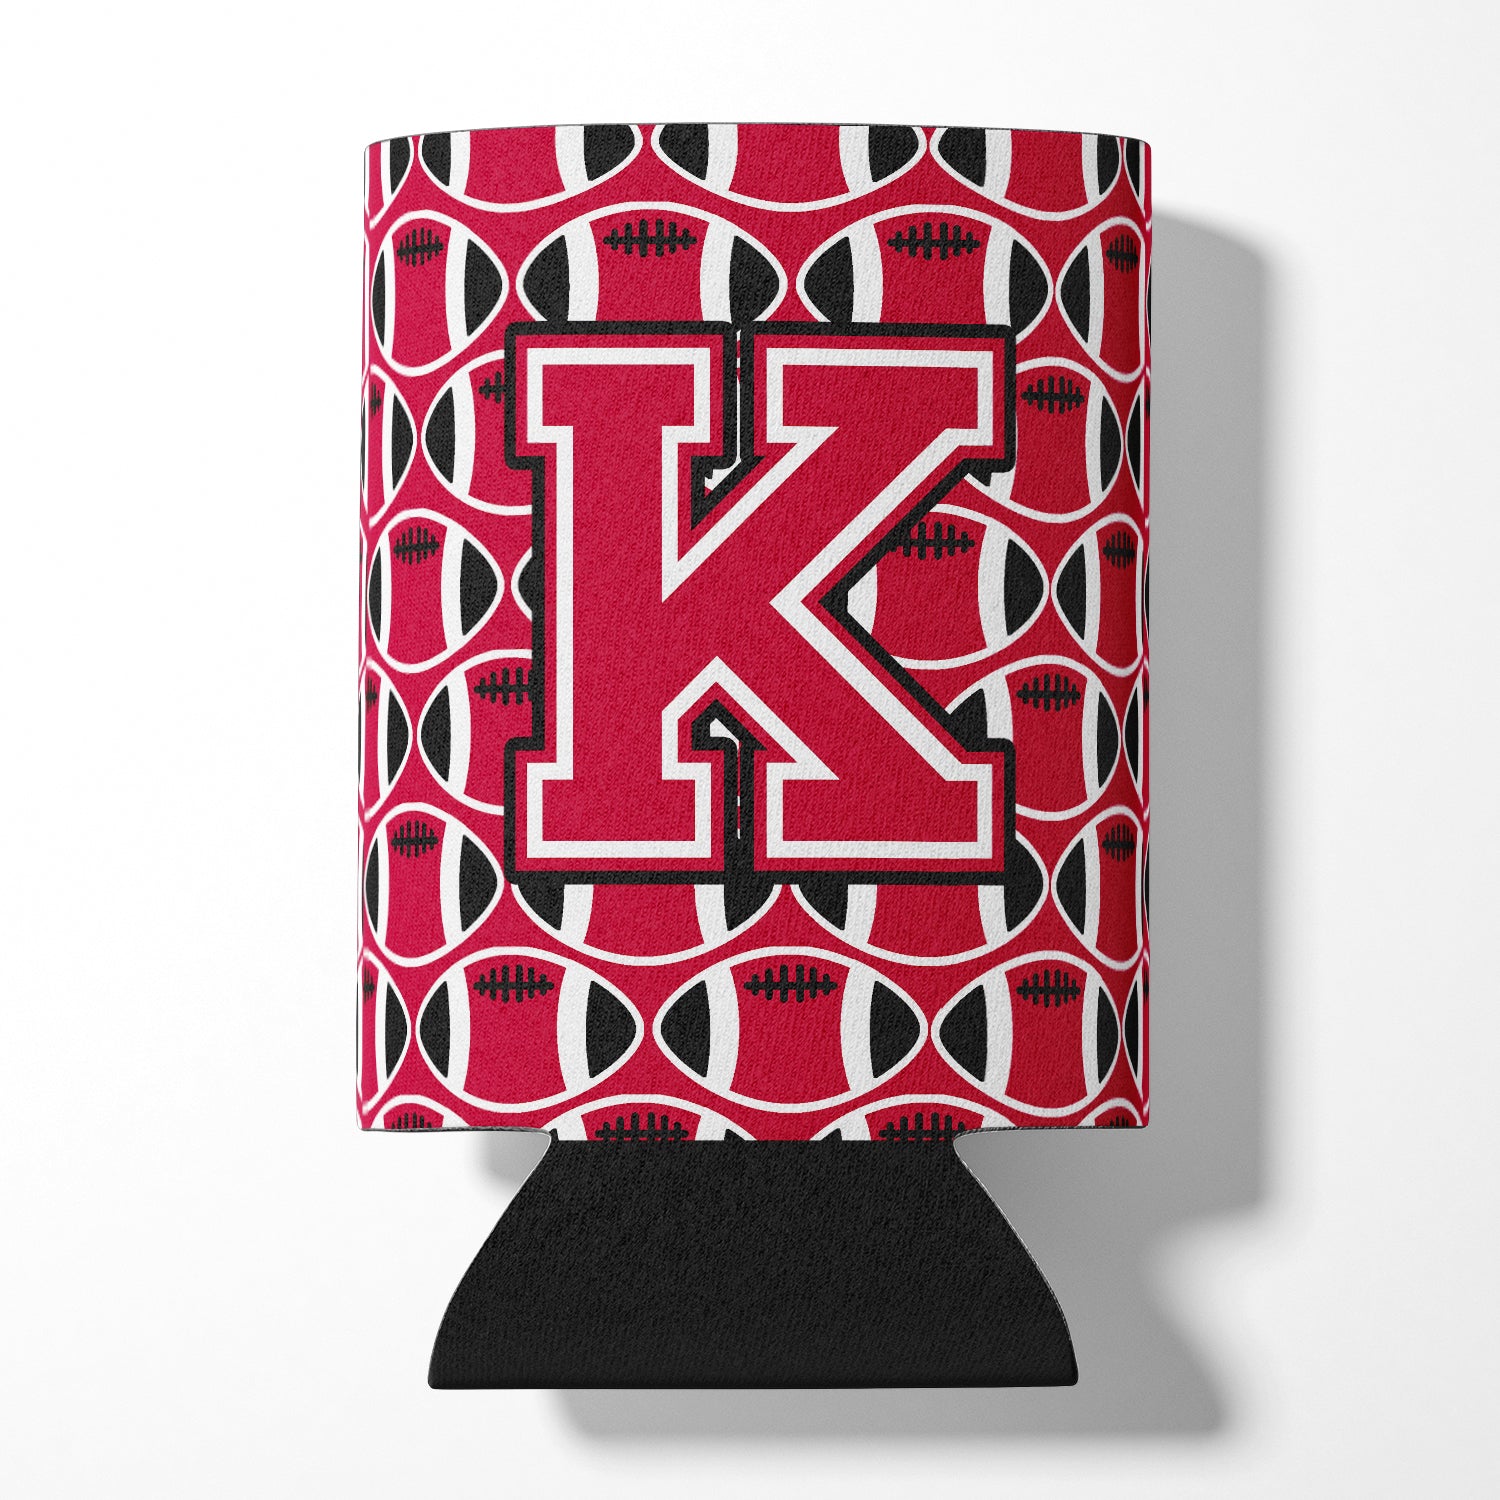 Letter K Football Crimson and White Can or Bottle Hugger CJ1079-KCC